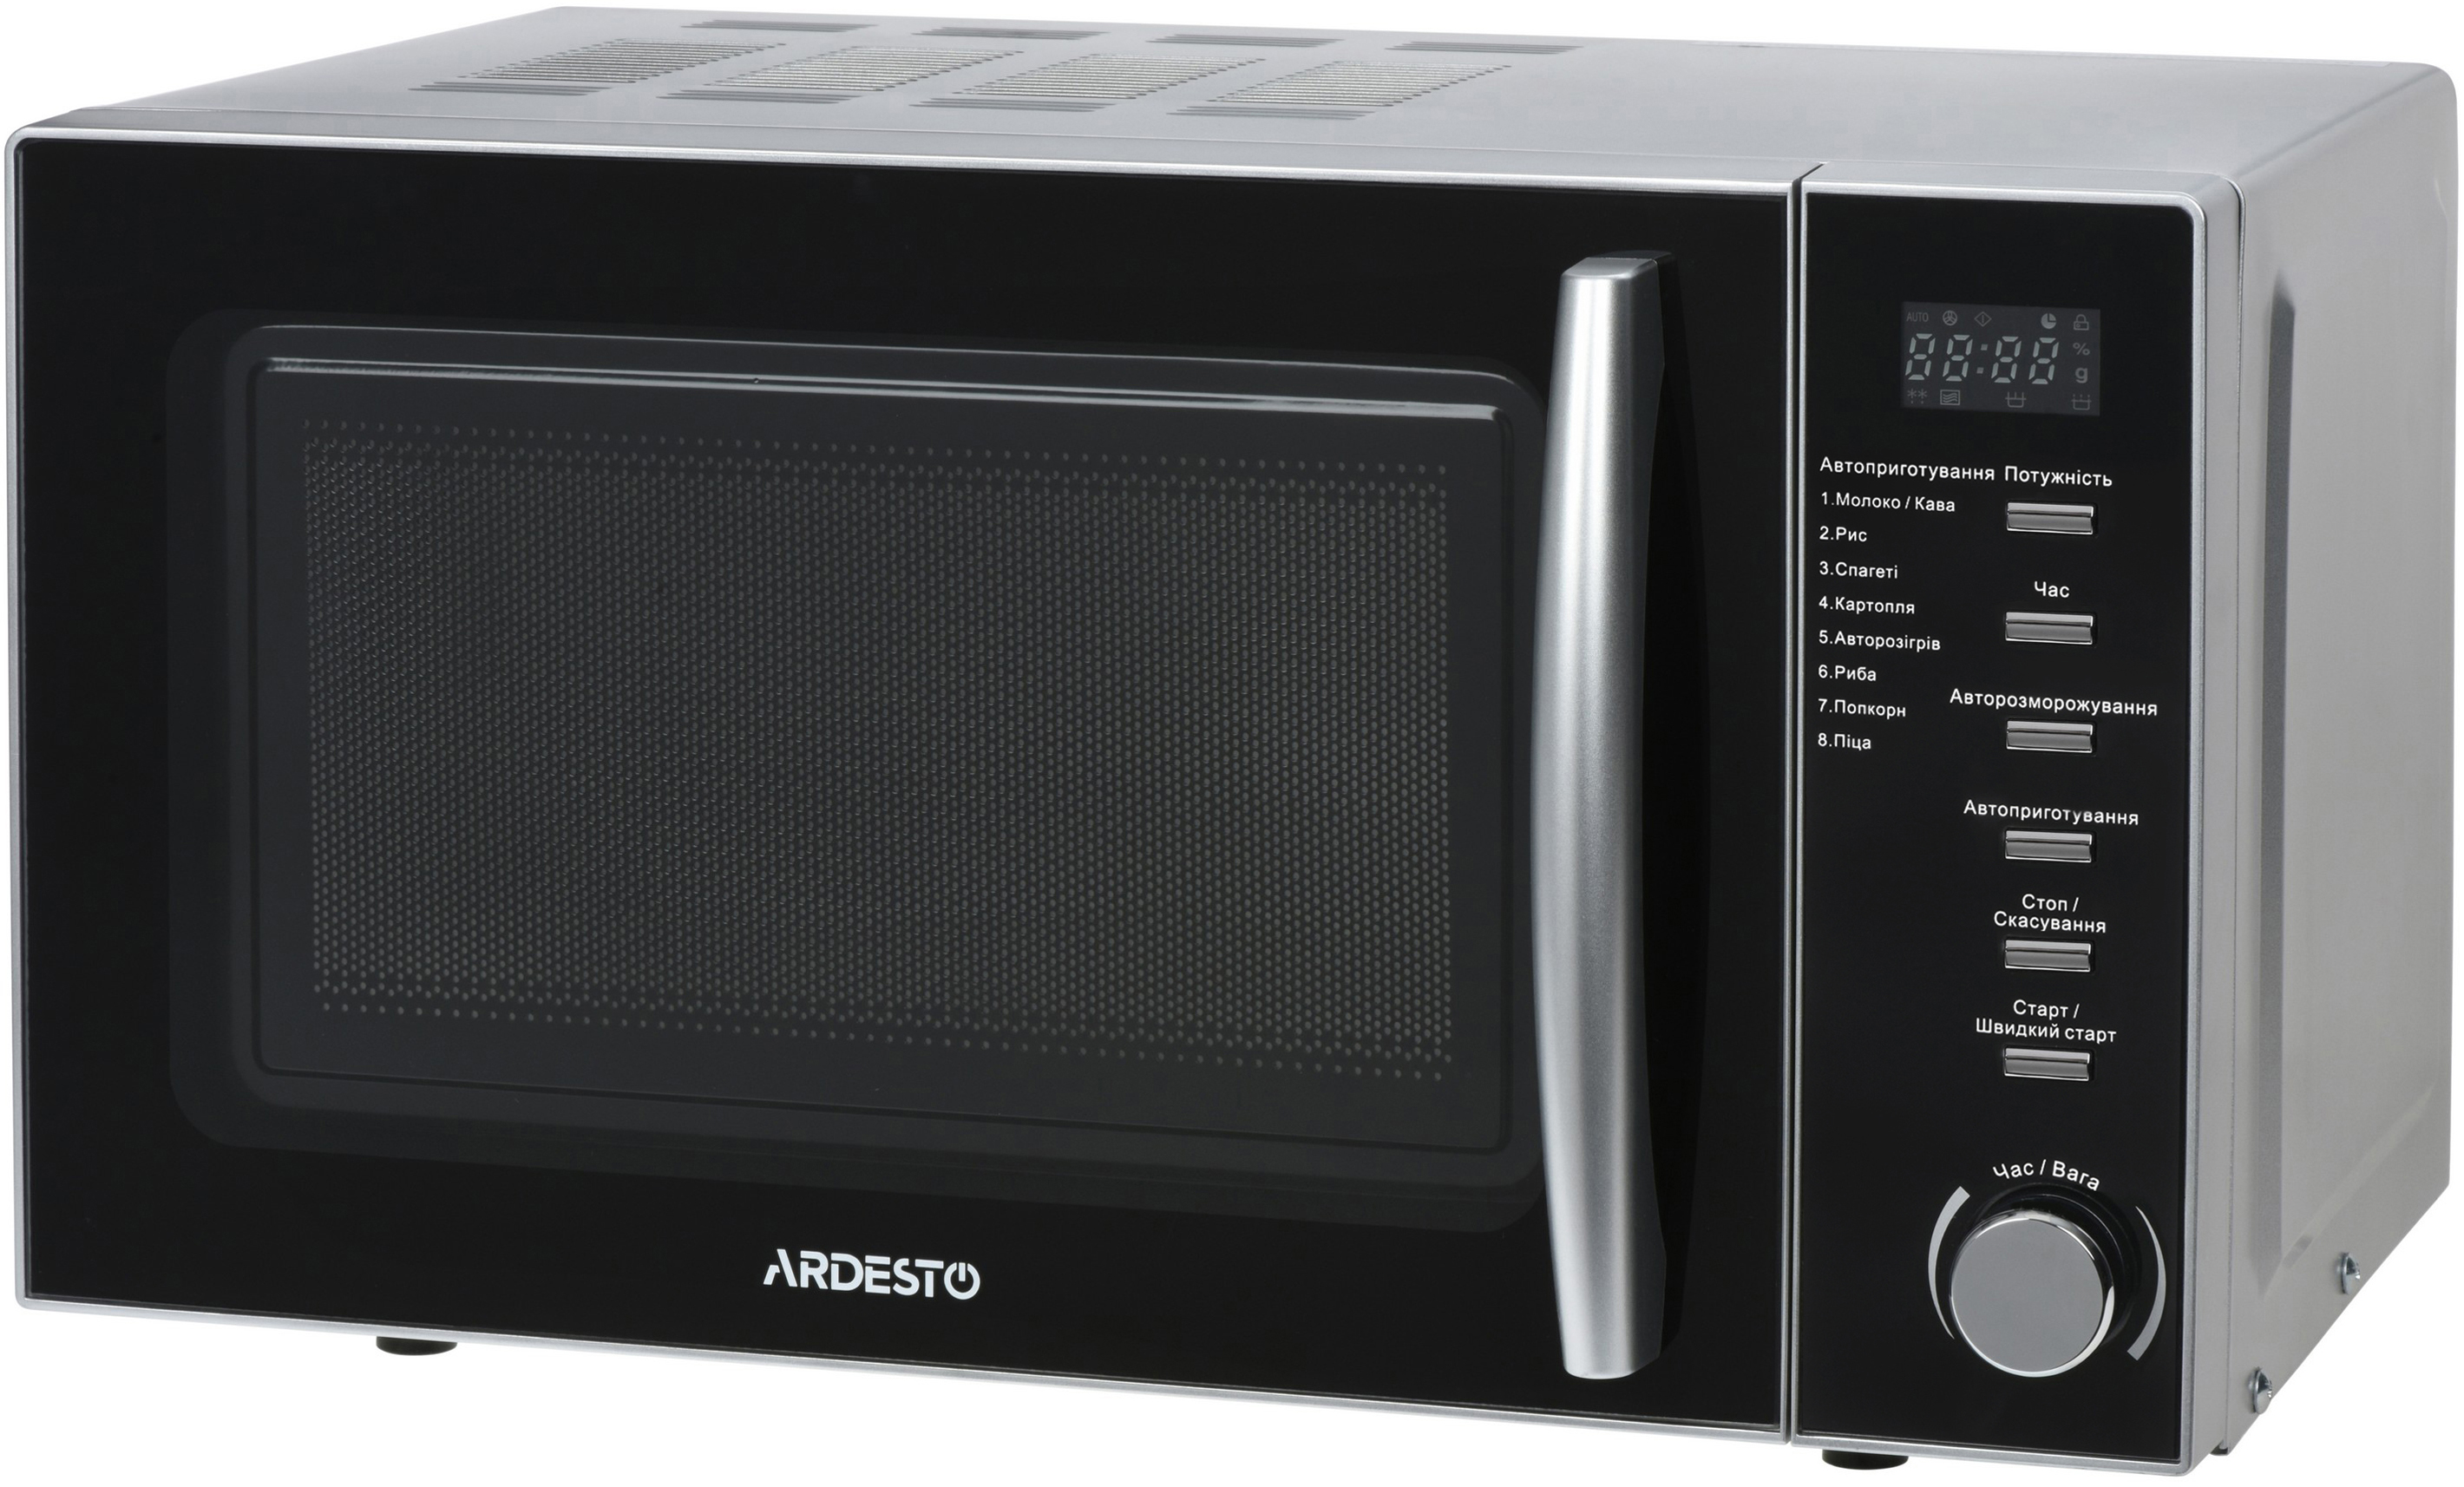 Характеристики микроволновая печь Ardesto GO-E725S